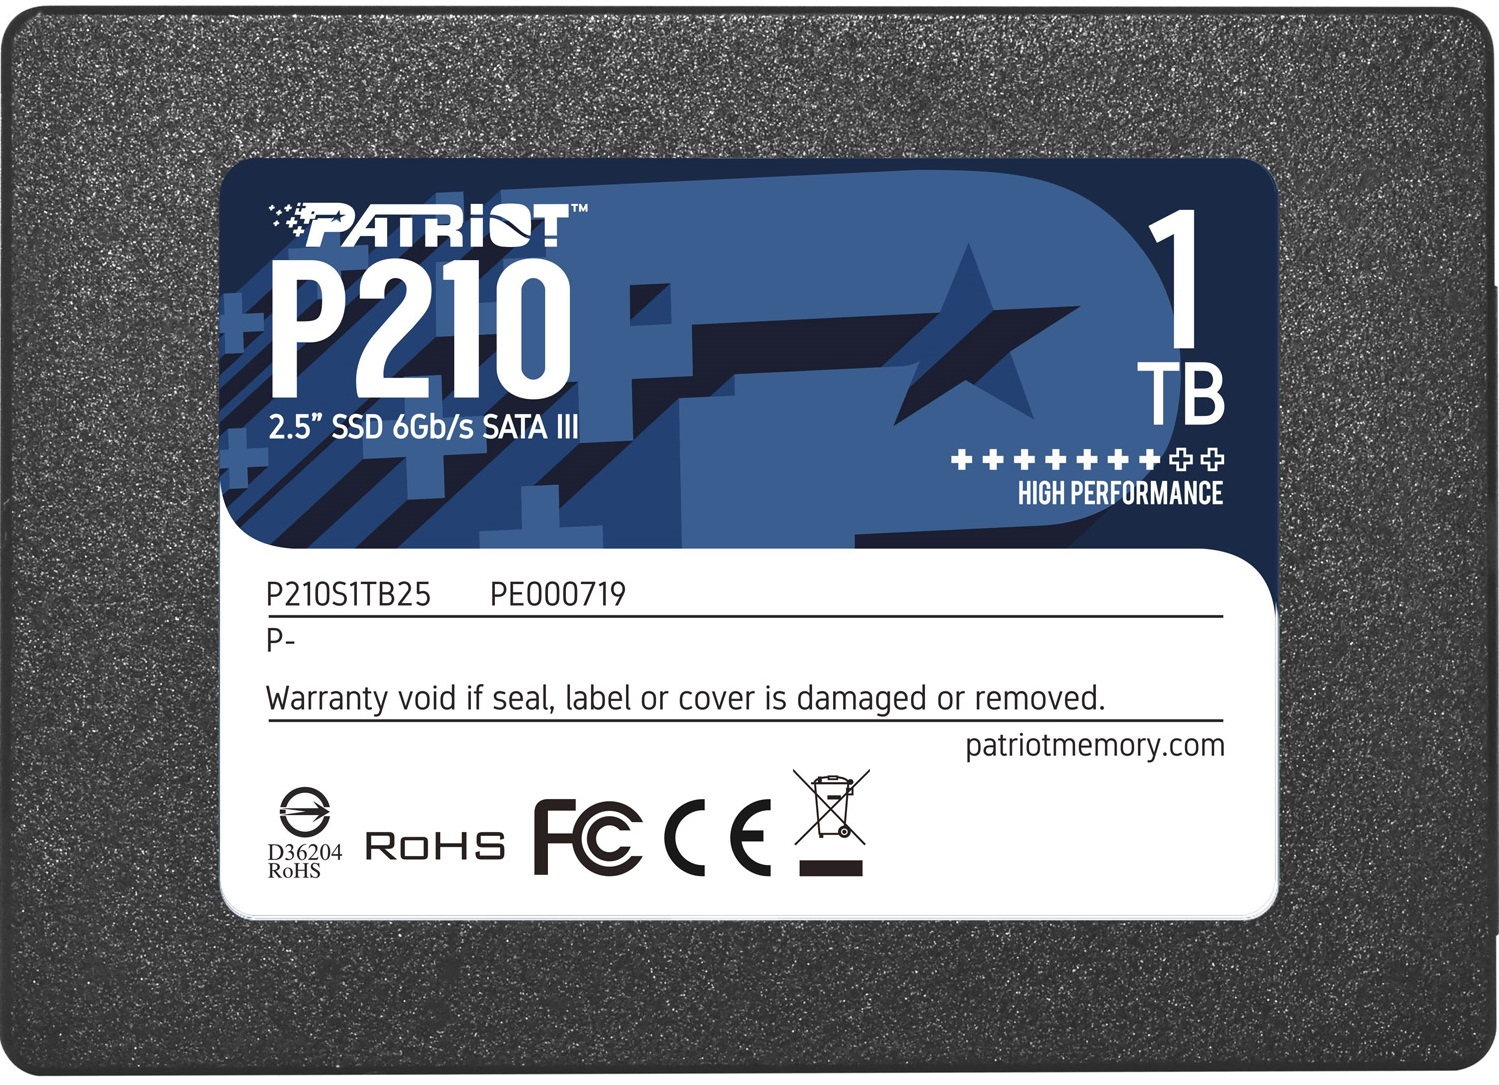 УЦЕНКА! Накопитель SSD 1TB PATRIOT P210 2.5" SATA3 (P210S1TB25) (2009864646025) в Киеве